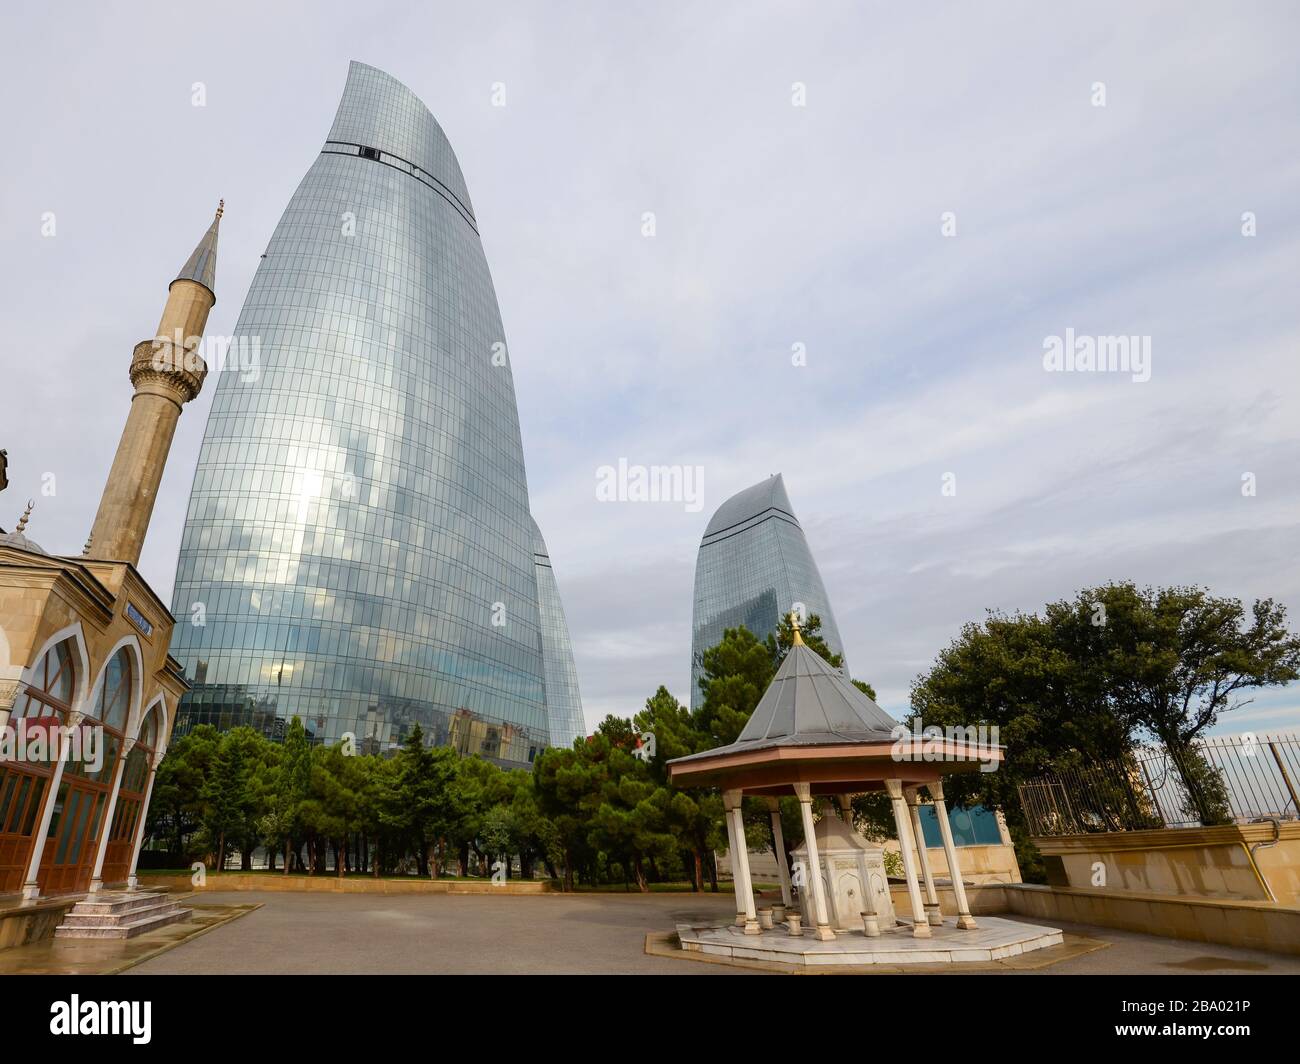 Mosquée des Martyrs devant le gratte-ciel moderne connu comme les Flame Towers à Bakou, Azerbaïdjan en un jour nuageux. Aussi connu comme la Mosquée turque. Banque D'Images